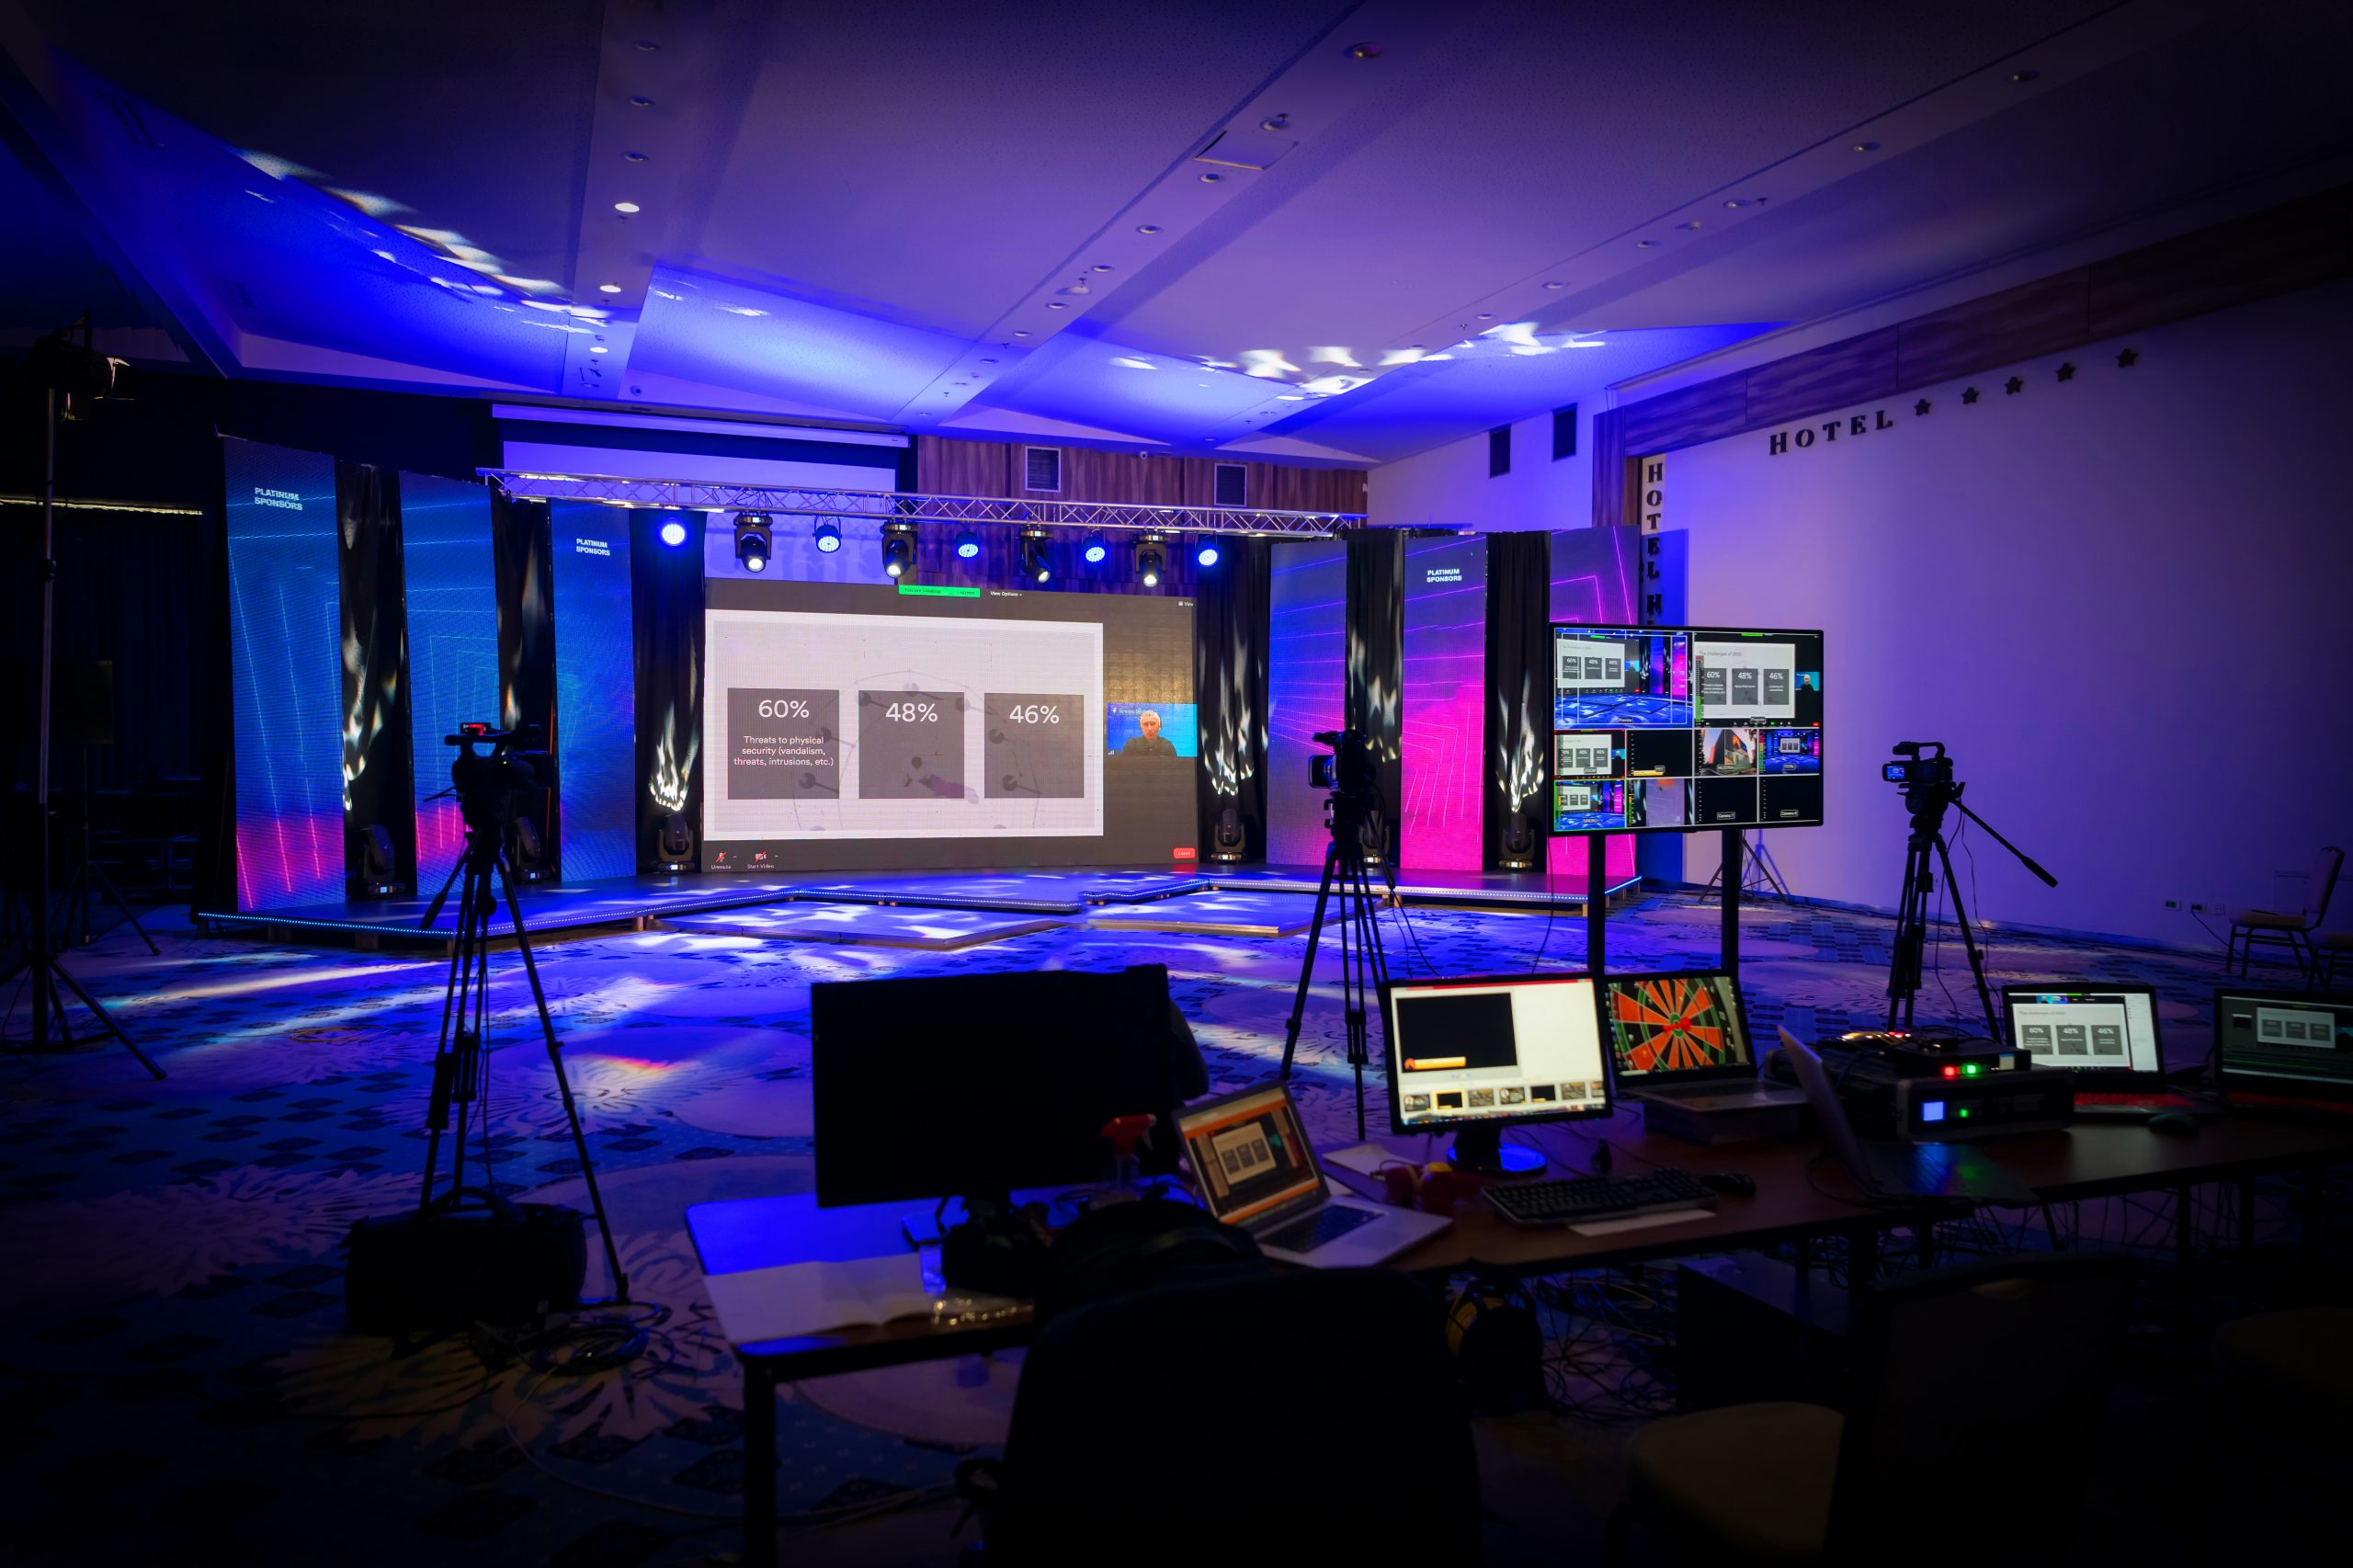 Centro de Eventos FIERGS lança estúdio para eventos híbridos por streaming